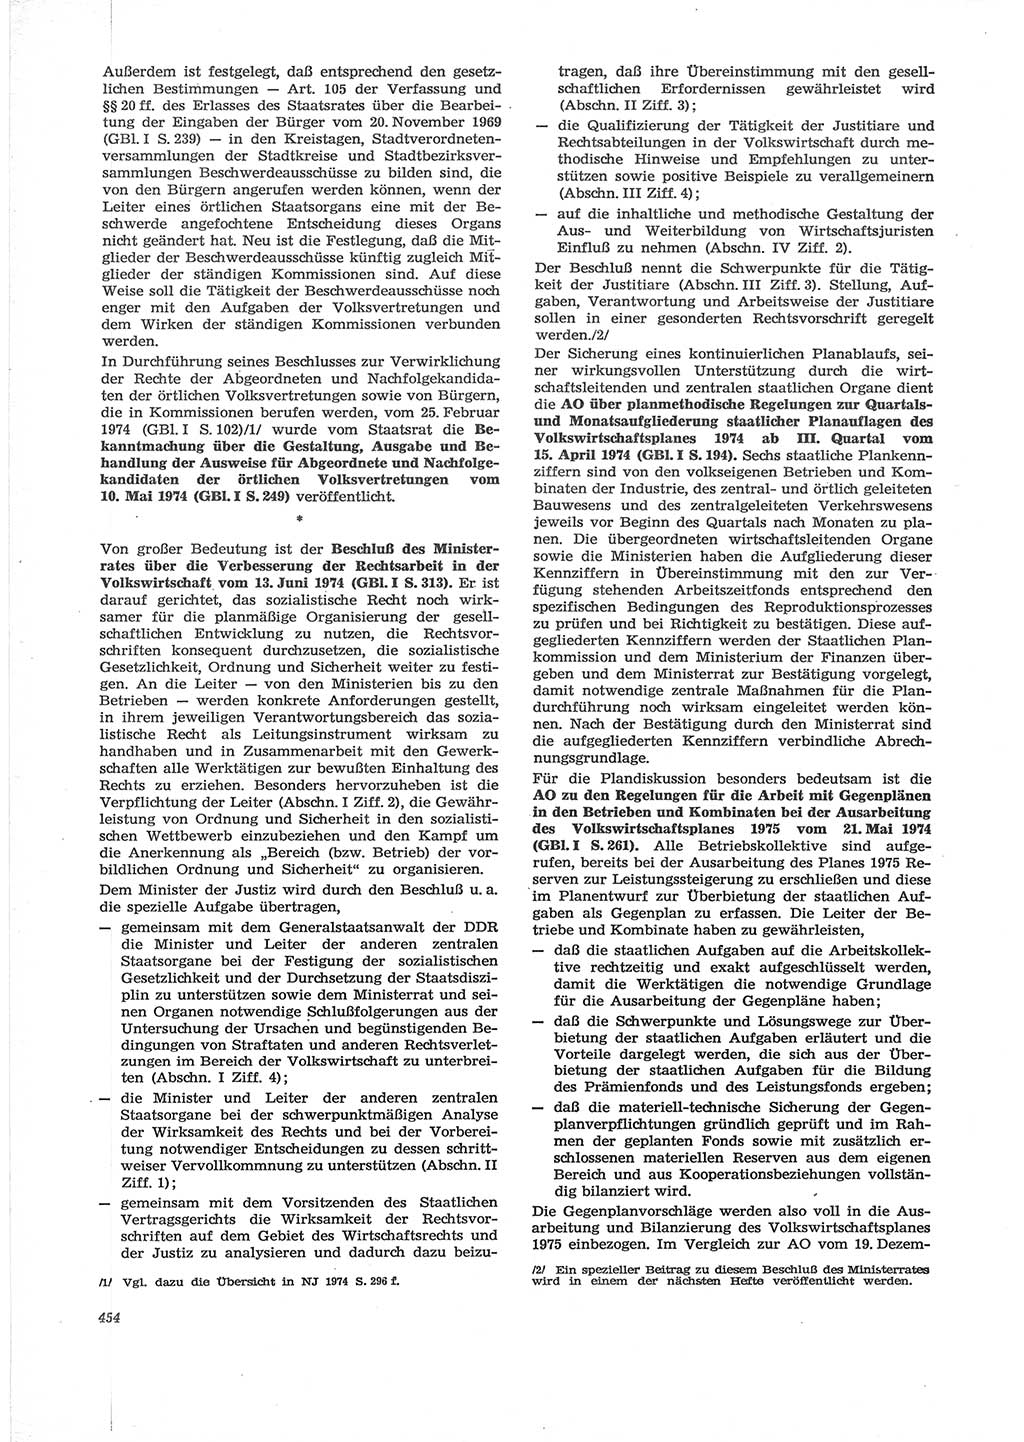 Neue Justiz (NJ), Zeitschrift für Recht und Rechtswissenschaft [Deutsche Demokratische Republik (DDR)], 28. Jahrgang 1974, Seite 454 (NJ DDR 1974, S. 454)